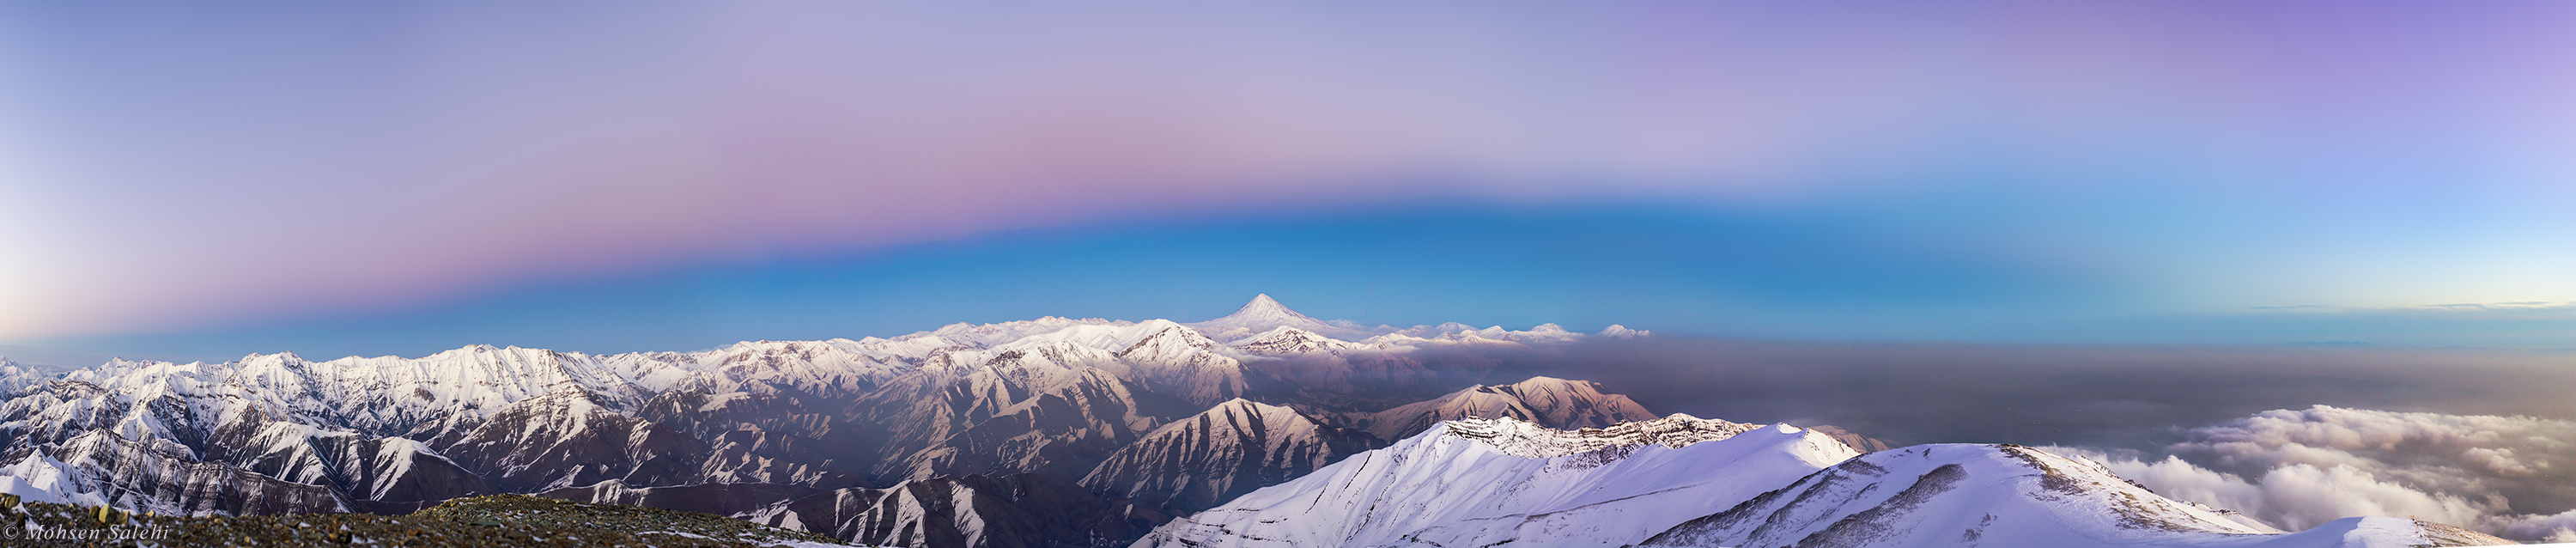 نمای سایه زمین و قله دماوند از قله توچال